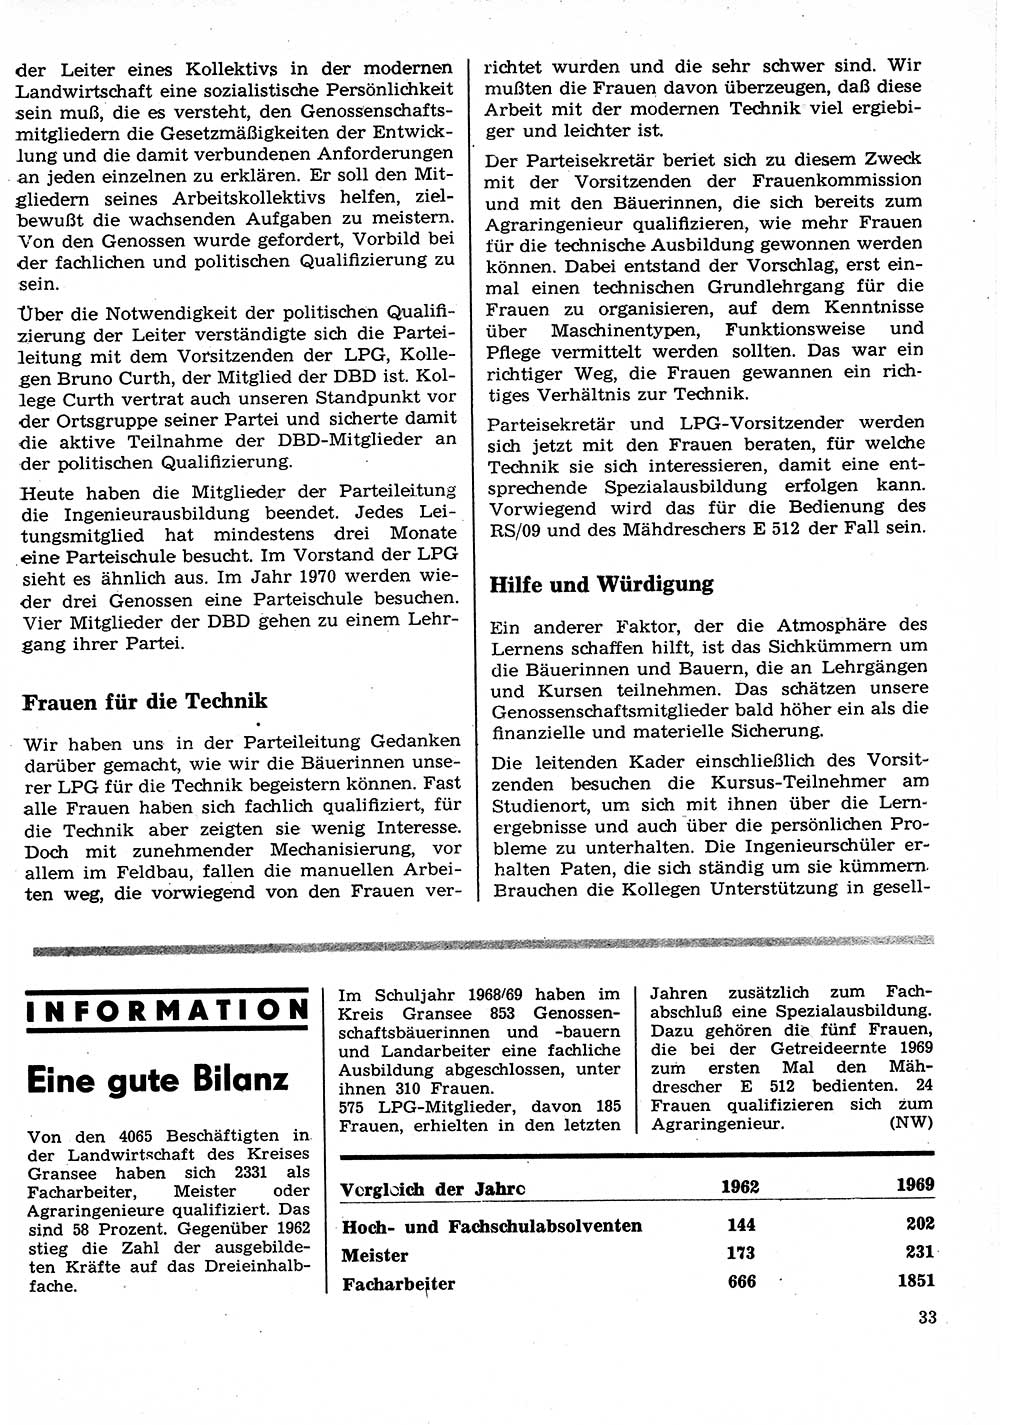 Neuer Weg (NW), Organ des Zentralkomitees (ZK) der SED (Sozialistische Einheitspartei Deutschlands) für Fragen des Parteilebens, 25. Jahrgang [Deutsche Demokratische Republik (DDR)] 1970, Seite 33 (NW ZK SED DDR 1970, S. 33)